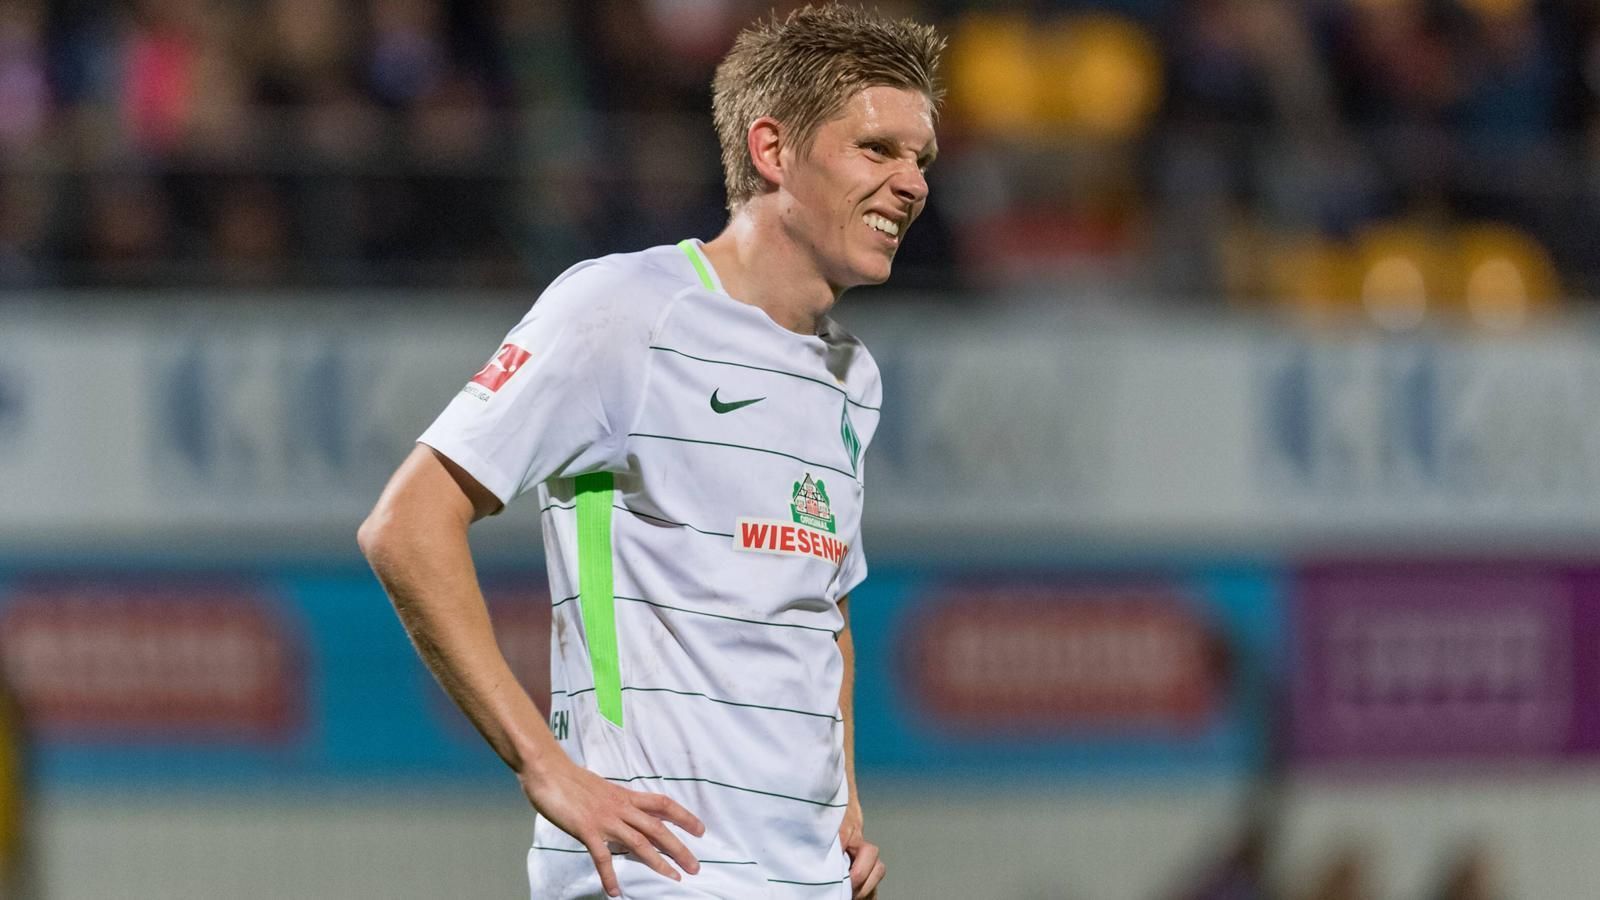 
                <strong>Aron Johannsson (SV Werder Bremen)</strong><br>
                FußverletzungVerletzt seit 18. Juli 2018Prognose: Laut SVW-Sportdirektor Frank Baumann fehlt er "auf unbestimmte Zeit".
              